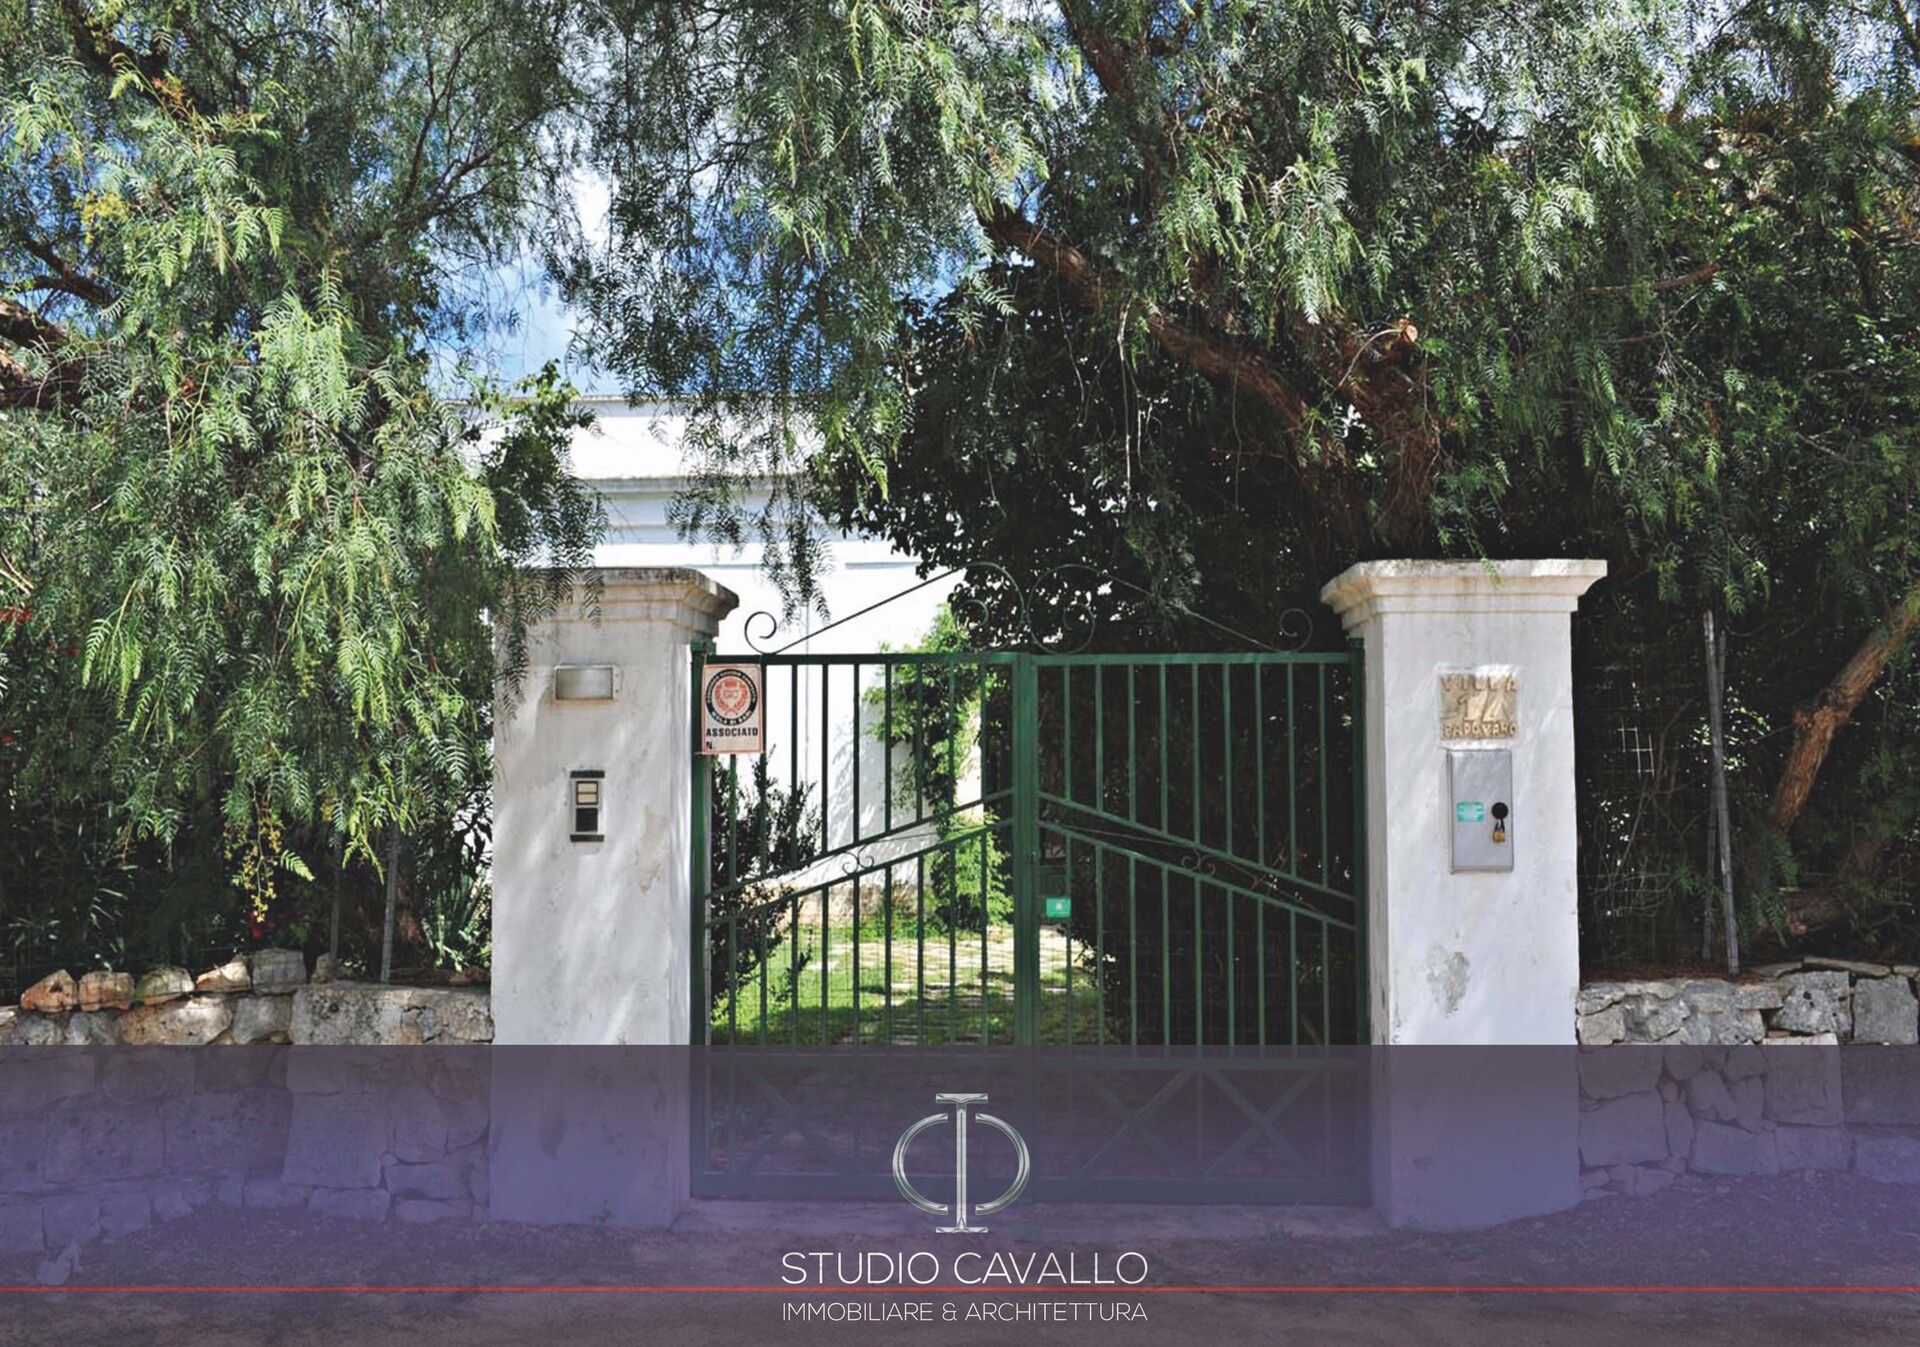 A vendre villa in zone tranquille Bari Puglia